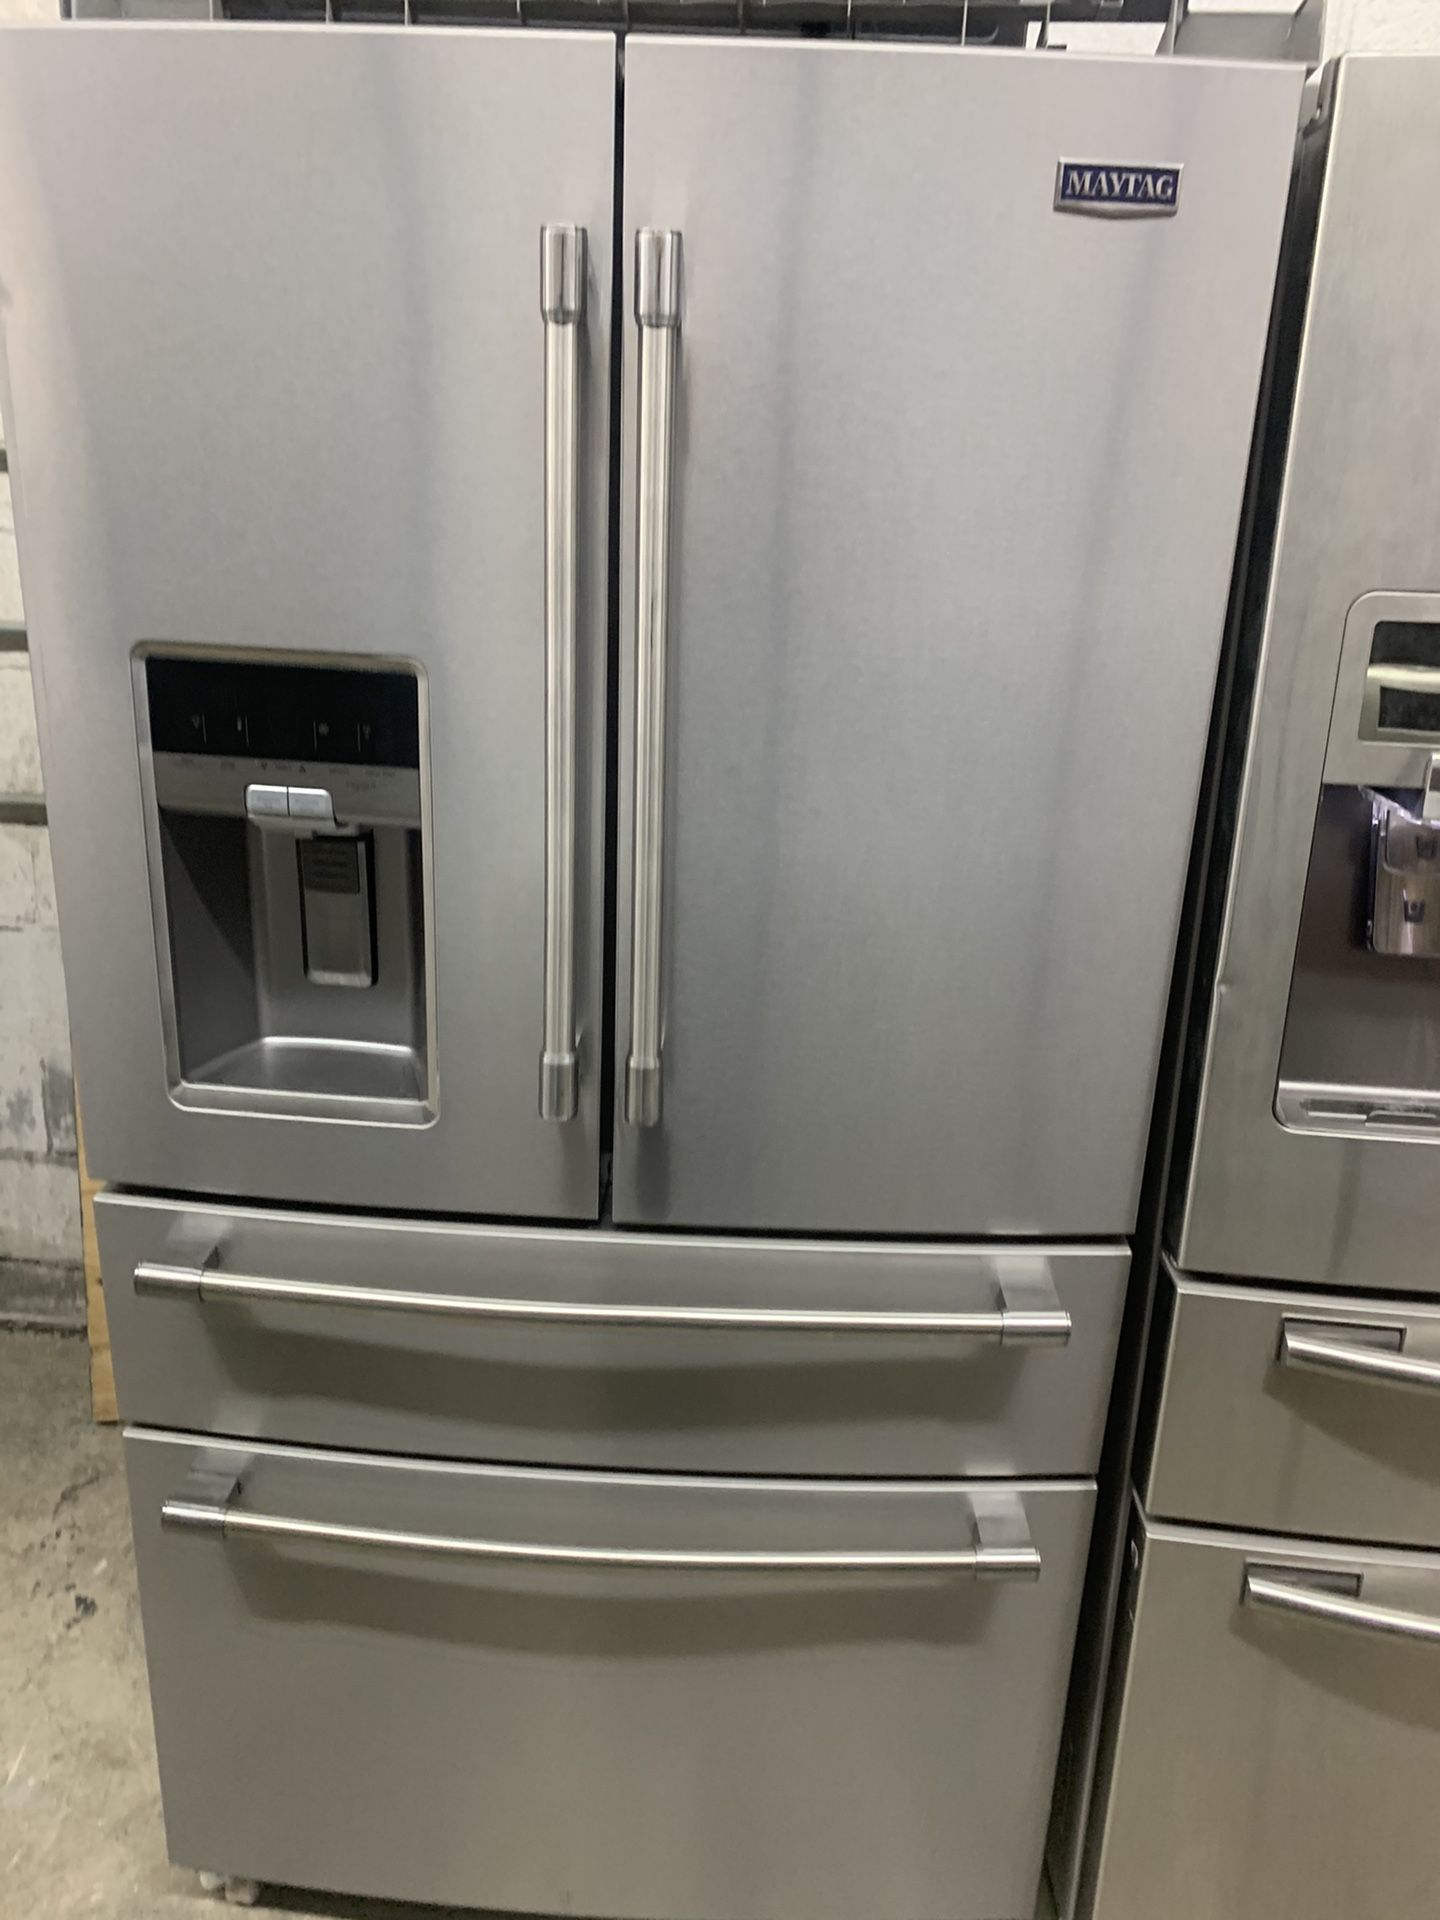 maytag refrigerator 36 inches 4 door